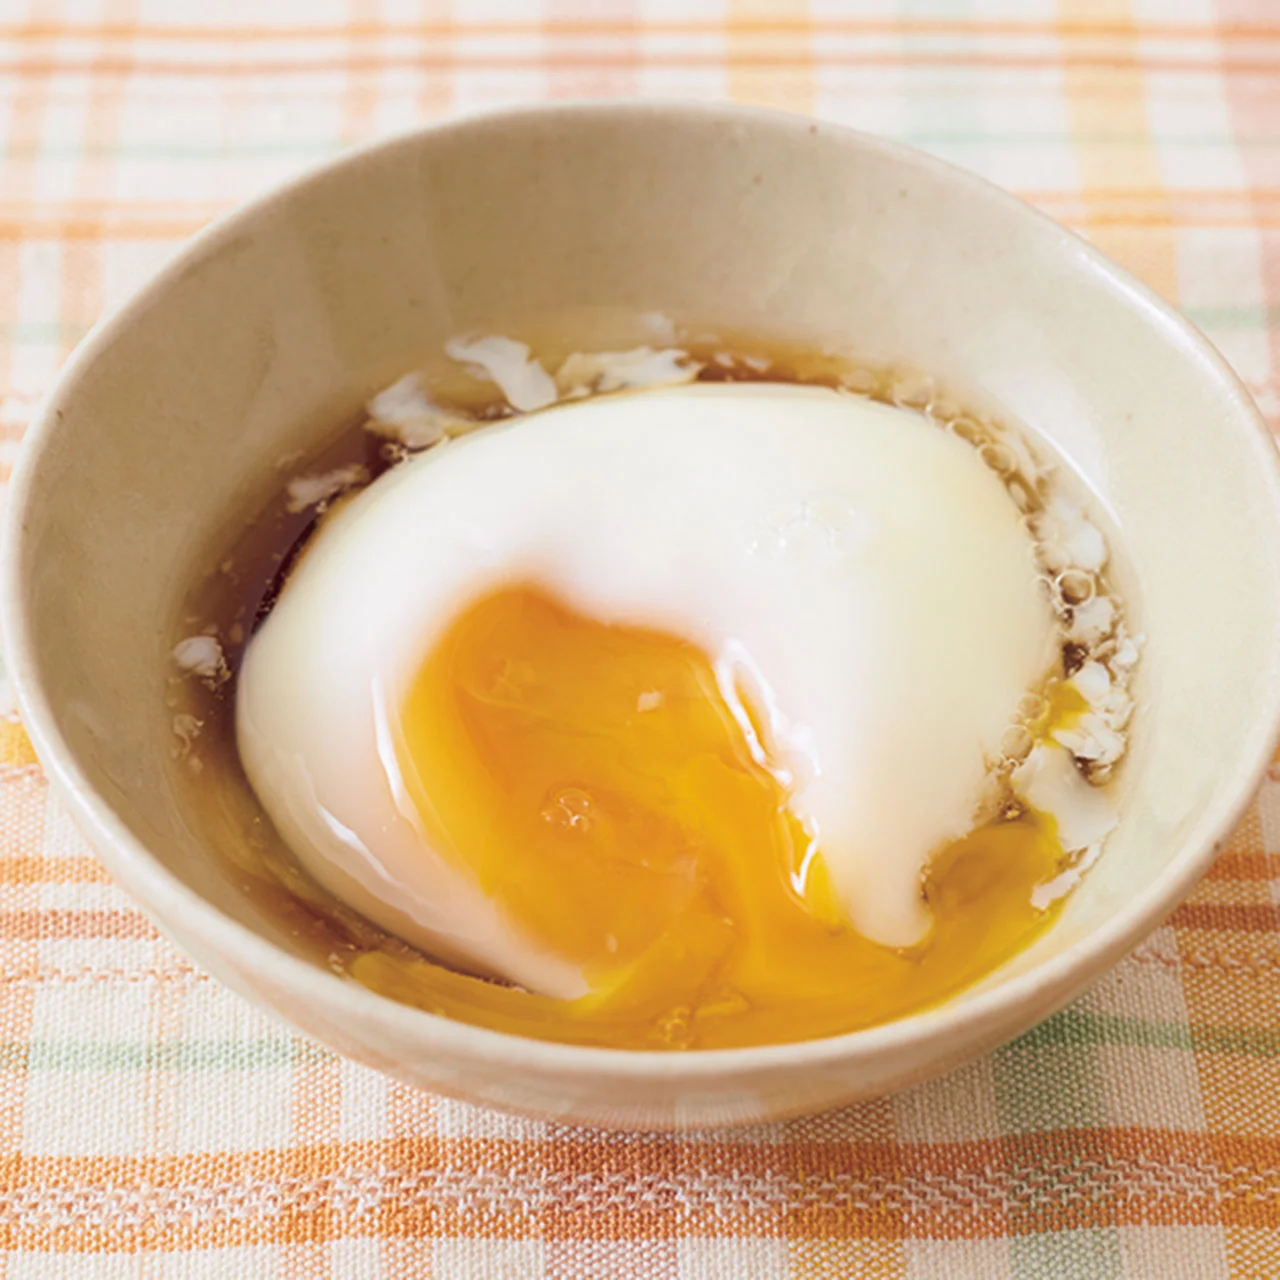 電子レンジで簡単温泉卵 By牧野直子さんの料理レシピ プロのレシピならレタスクラブ